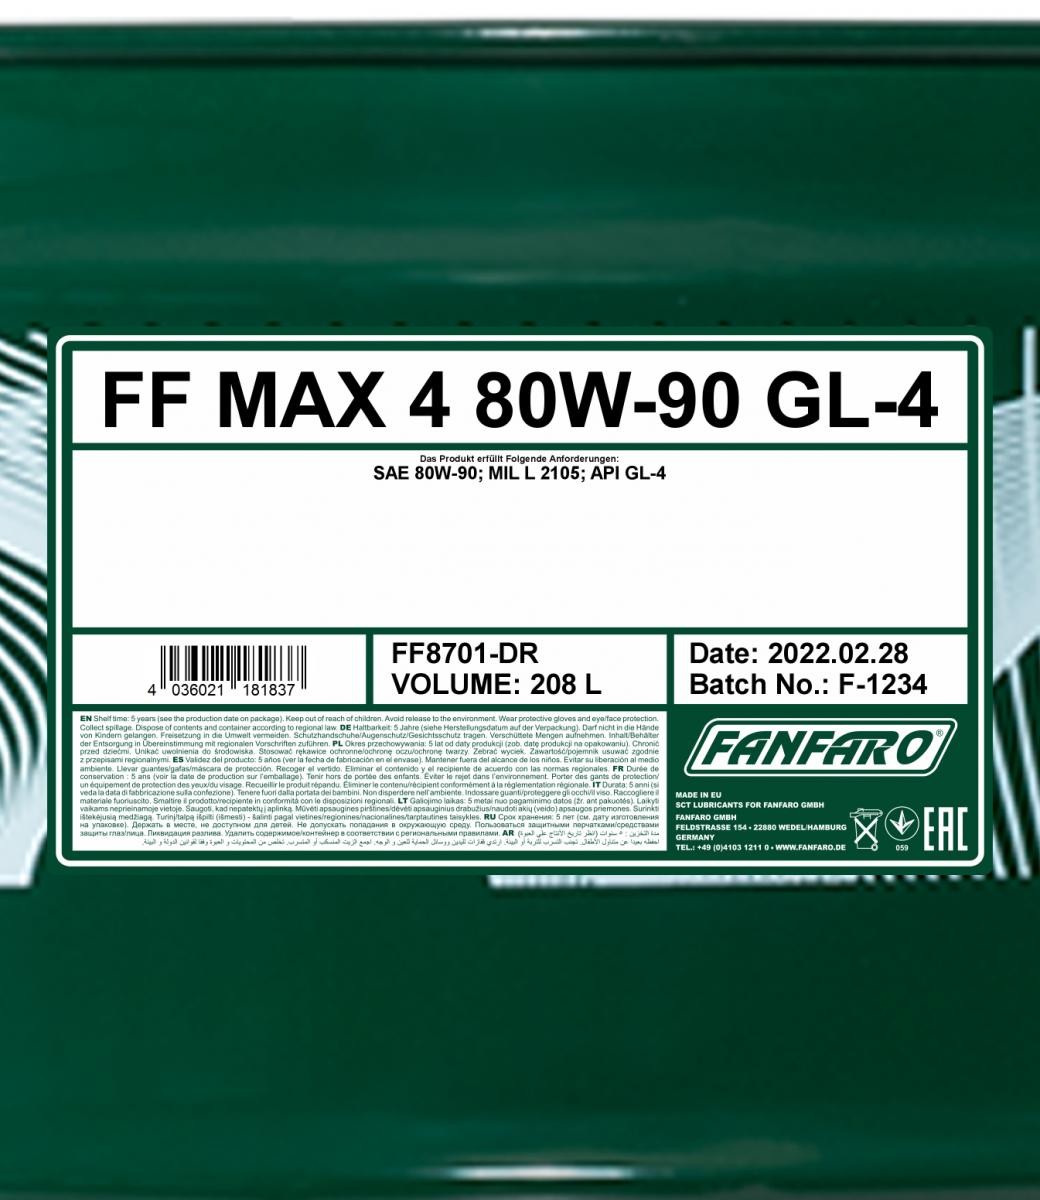 FANFARO Transmission oil FF8701-DR